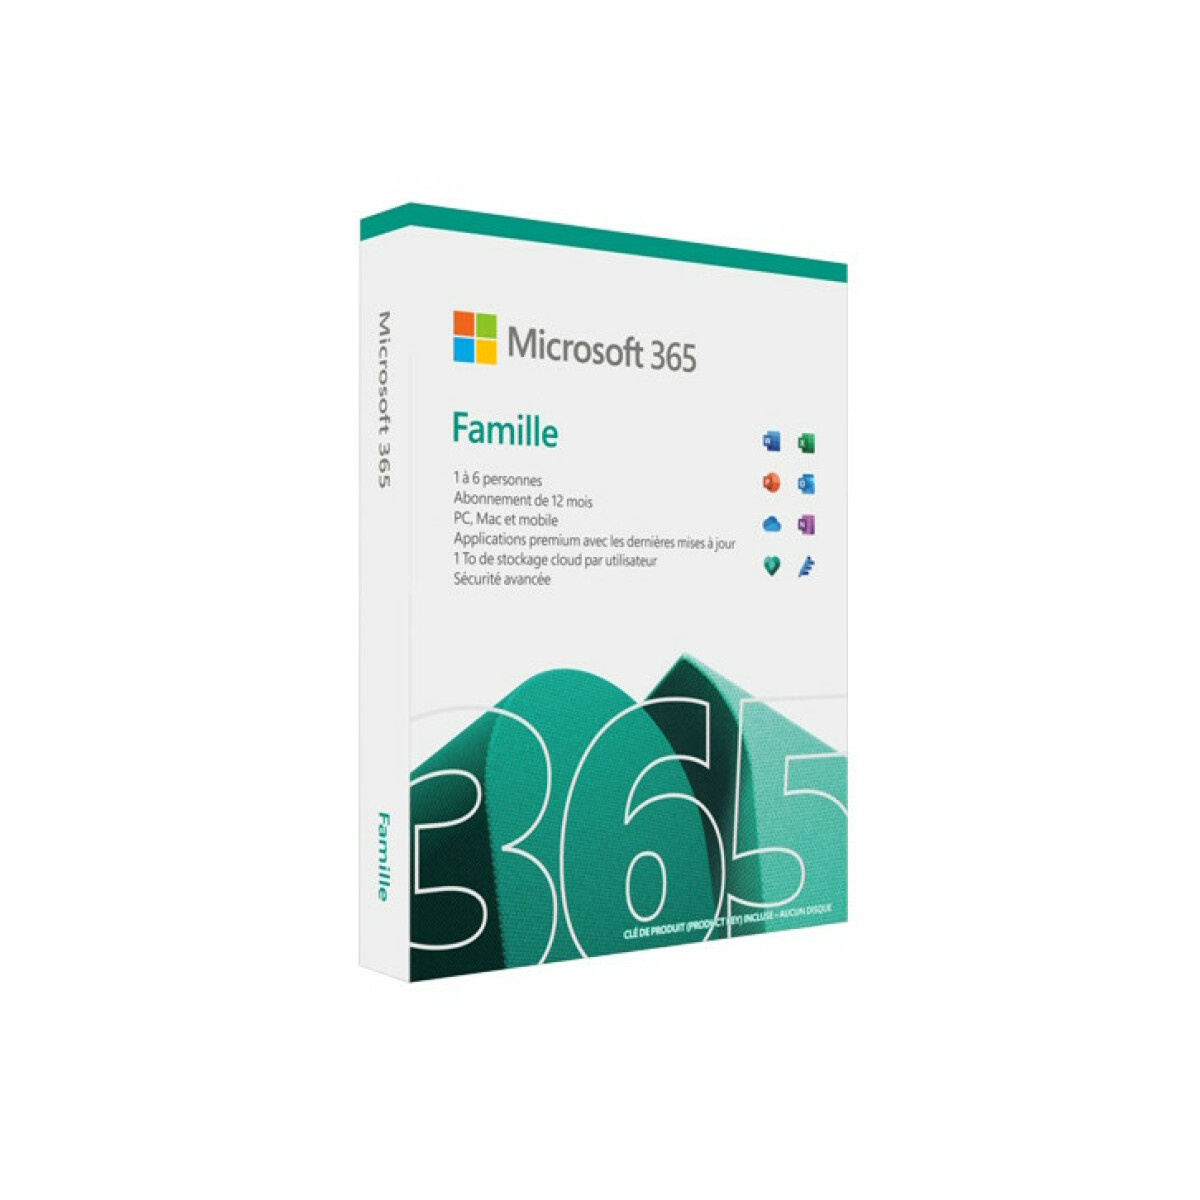 Microsoft Microsoft Office 365 Famille (Family) - 6 utilisateurs - 15 mois - PC, Mac, iOS, Android, Chromebook - A télécharger - Livraison rapide 7/7j